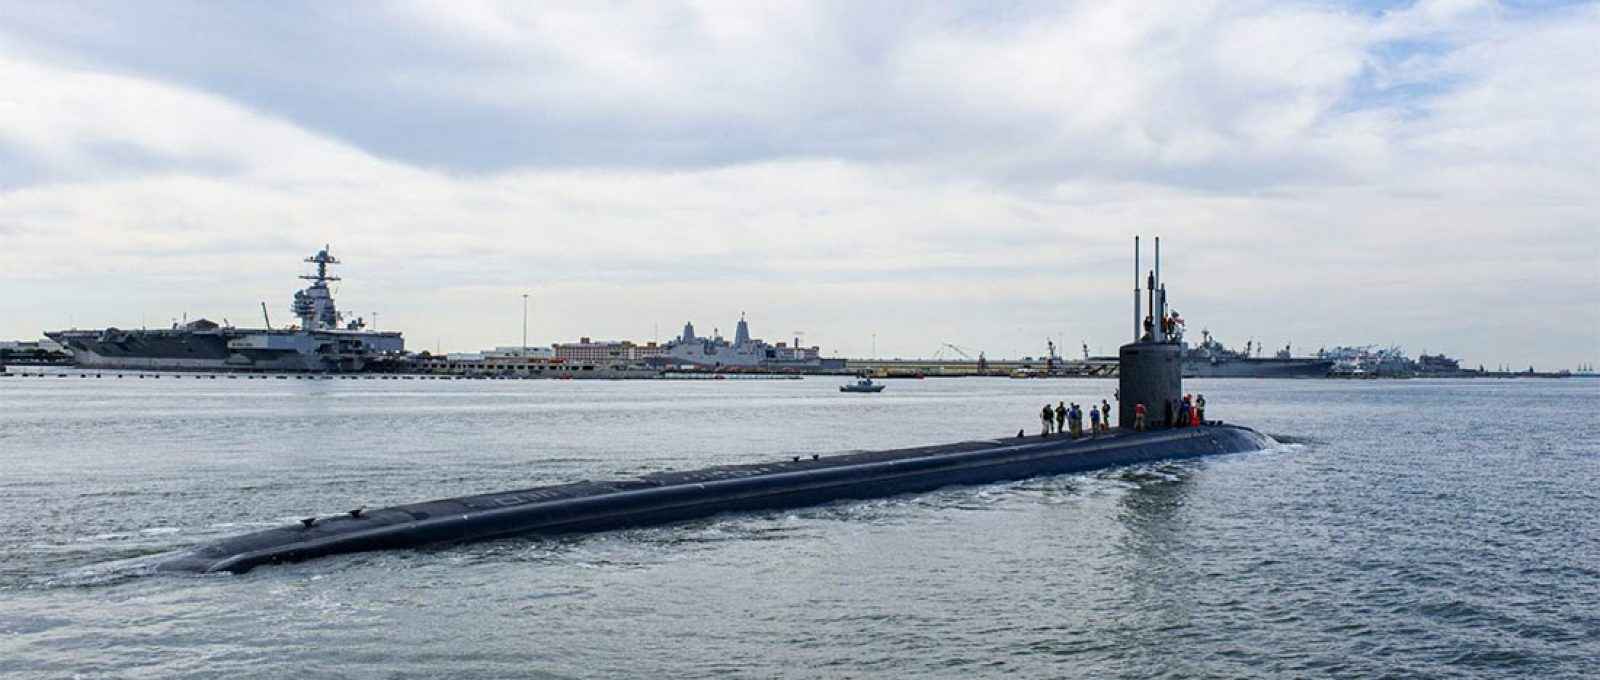 O USS New Hampshire, submarino de ataque classe Virginia, entrando na Estação Naval de Norfolk em 7 de maio de 2021 (Foto: Alfred A. Coffield/US Navy).